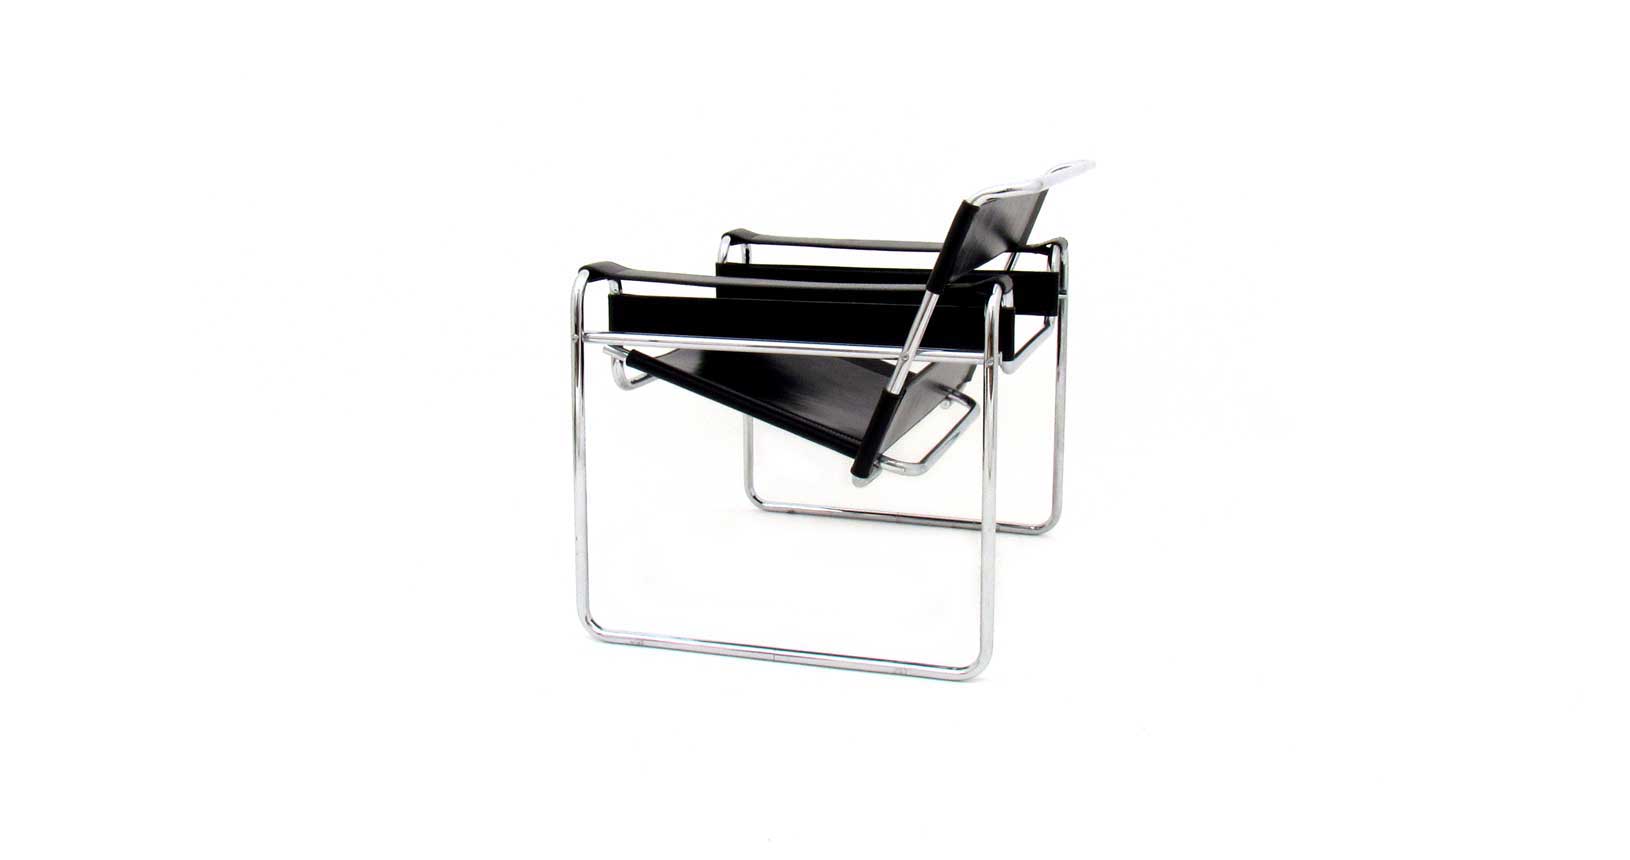 wassily chair sedia cuoio pelle cromato cassina vintage design knoll gavina furniture iconic design marcel breuer b3